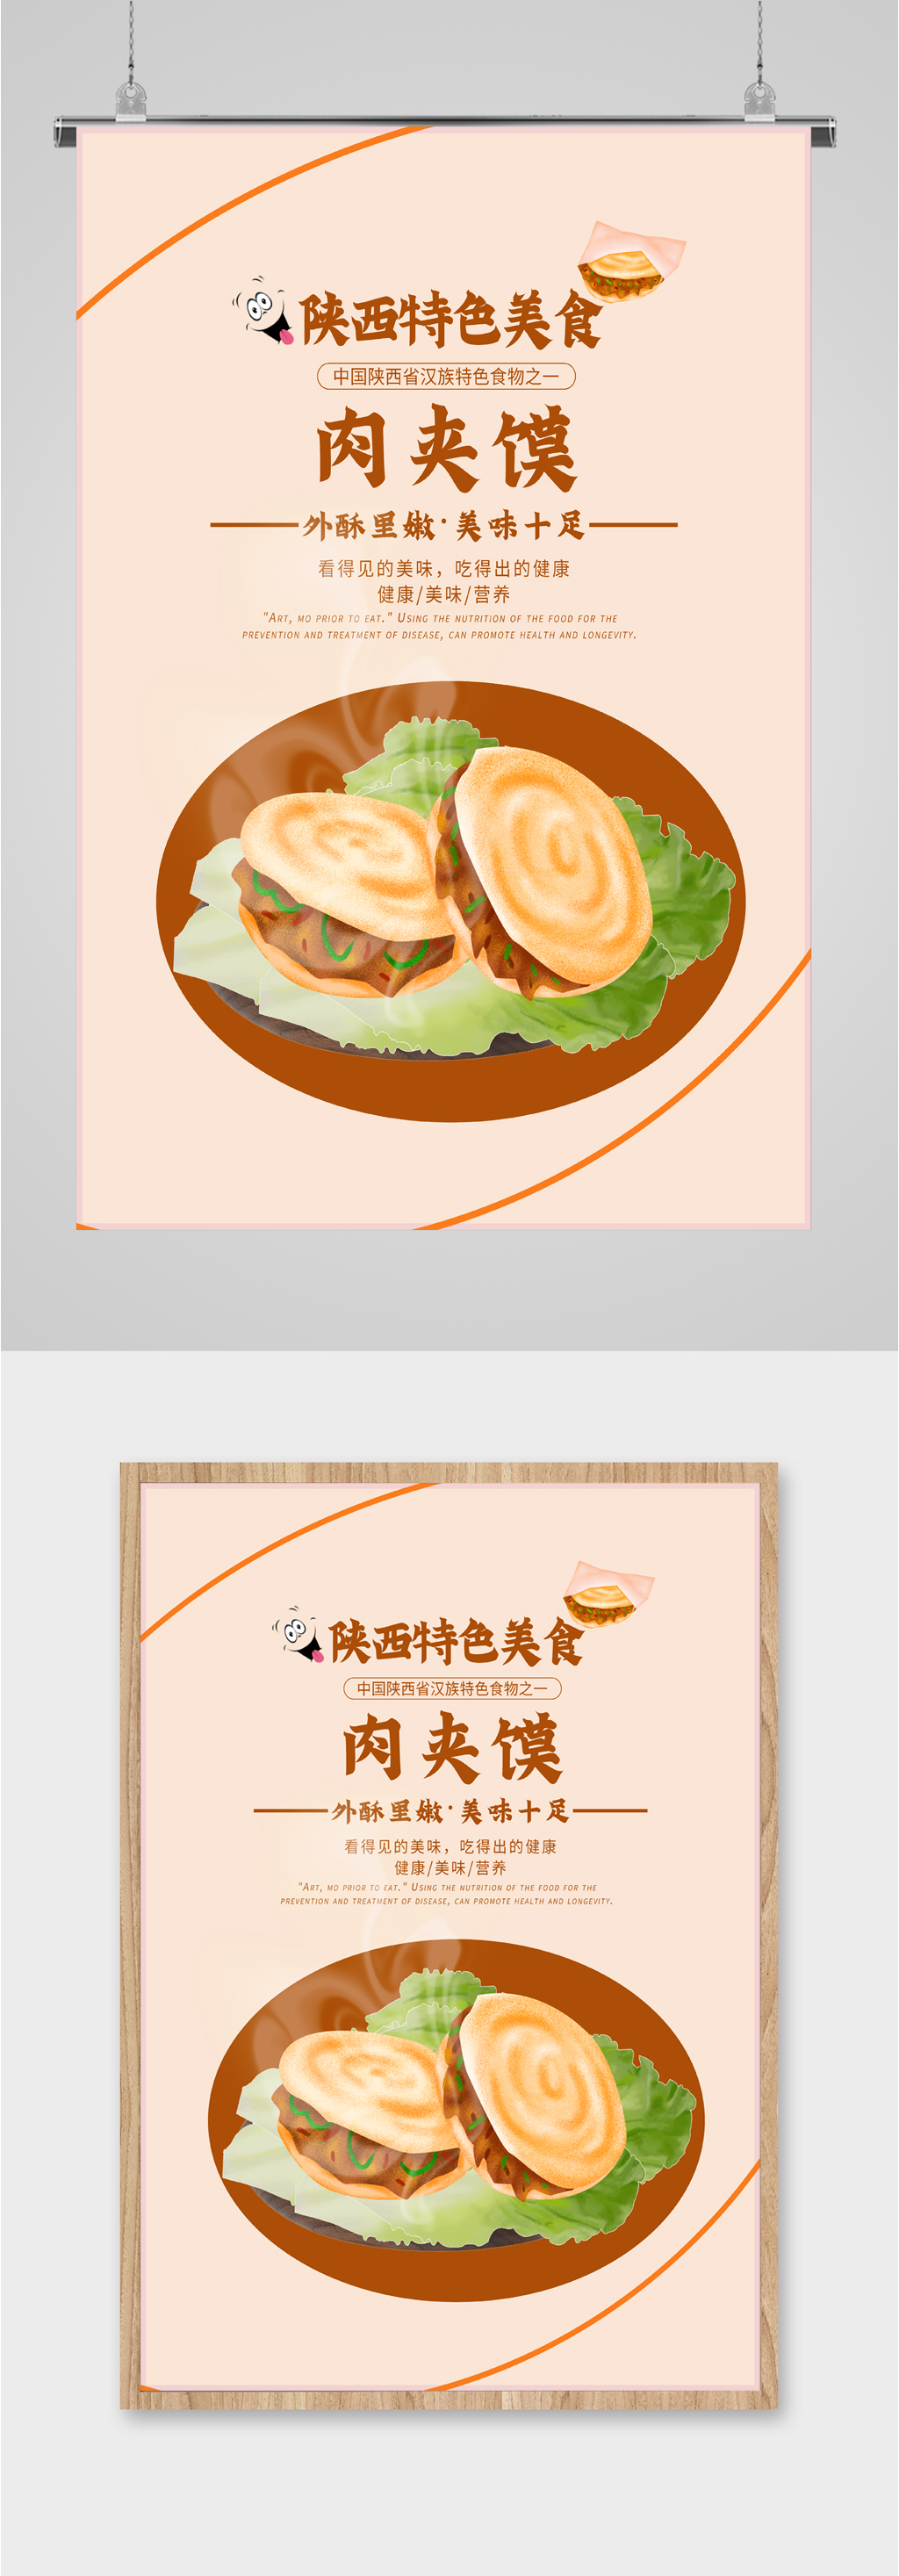 陕西特色美食肉夹馍插画海报